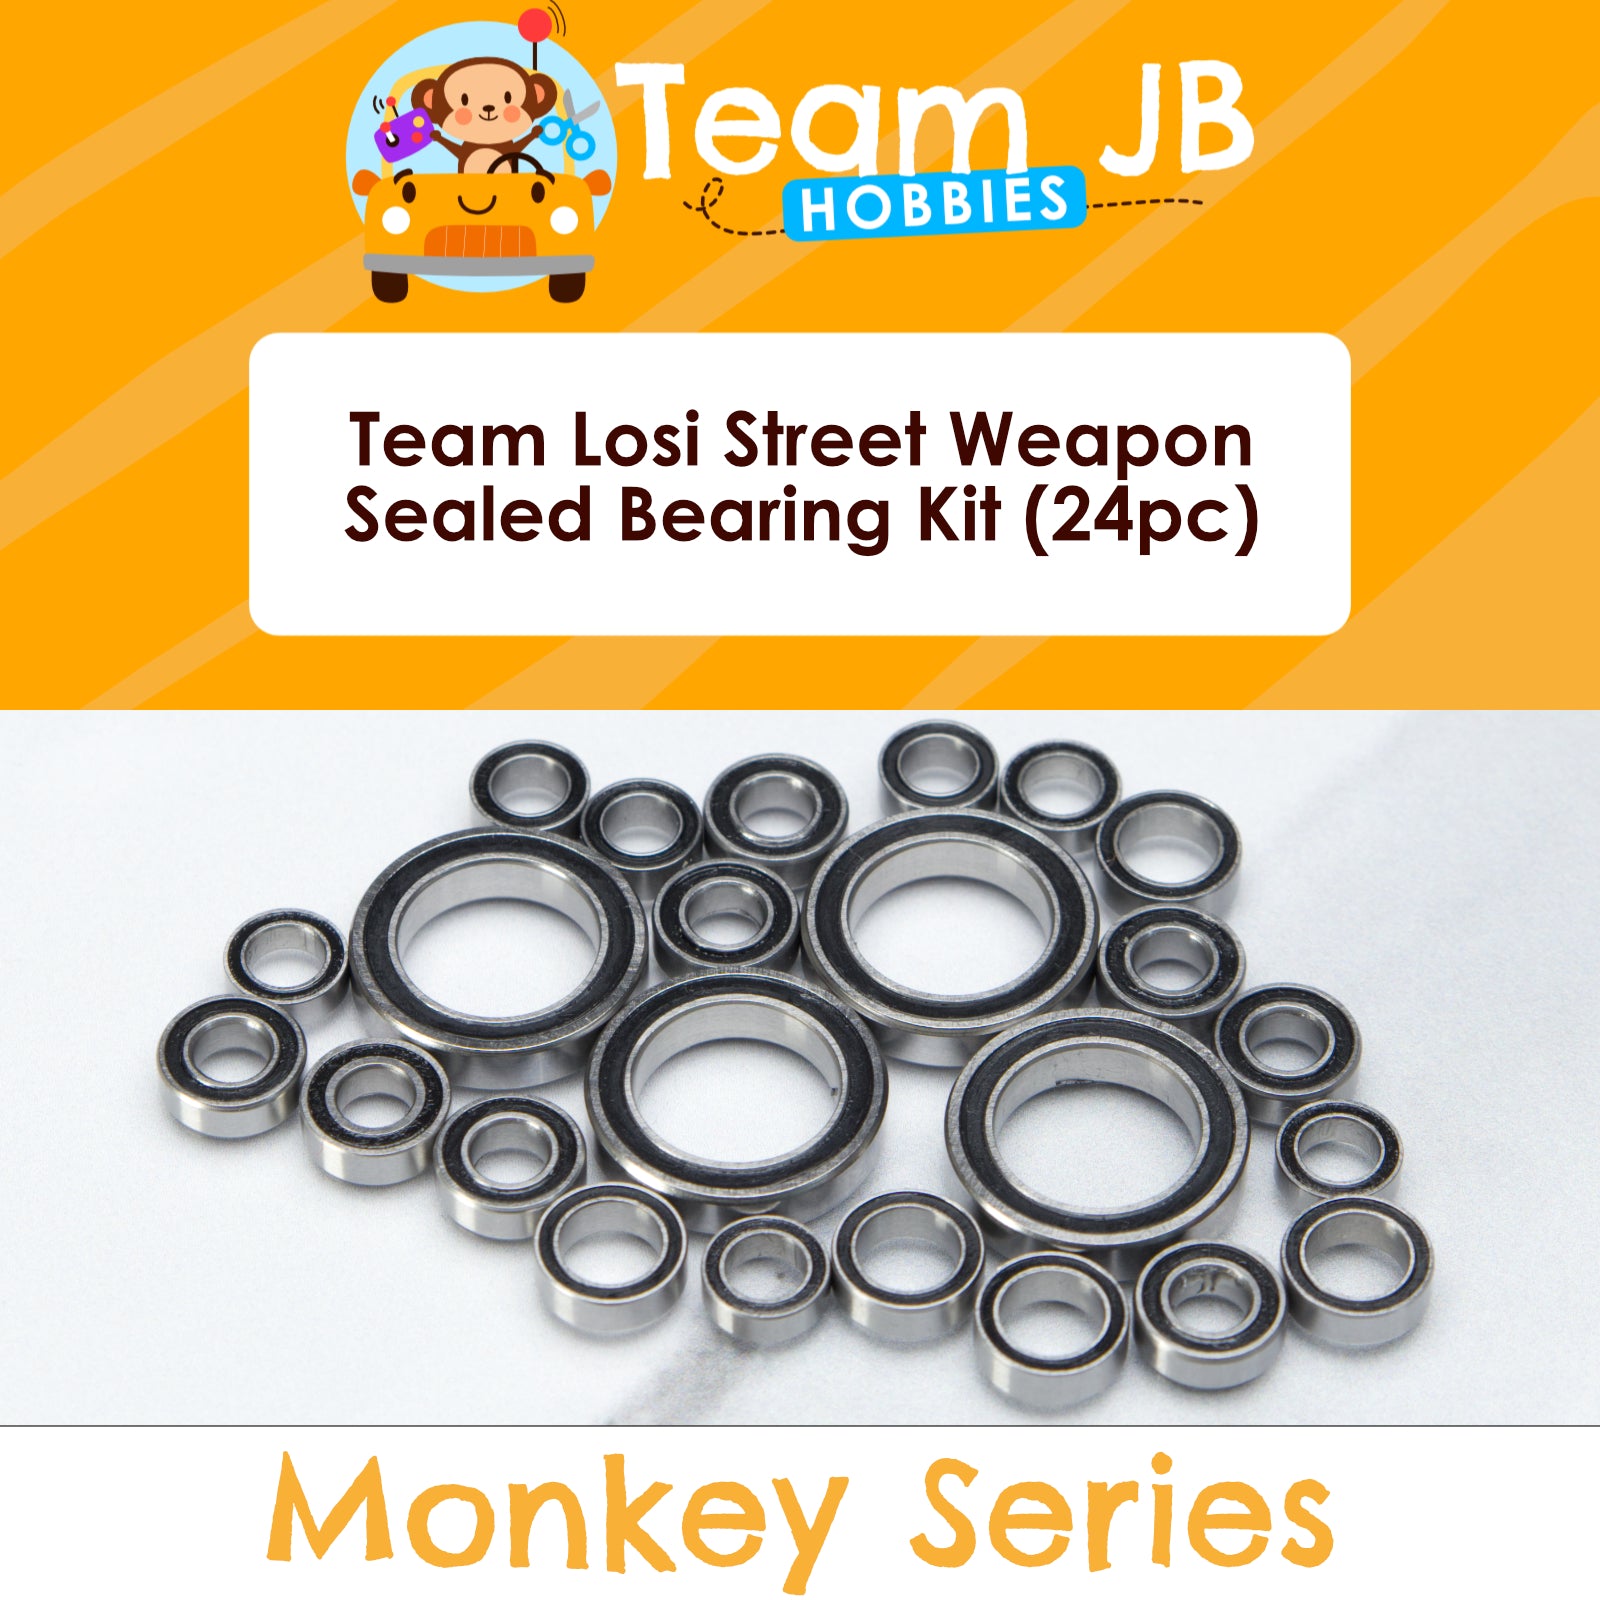 Team Losi Street Weapon - Sealed Bearing Kit